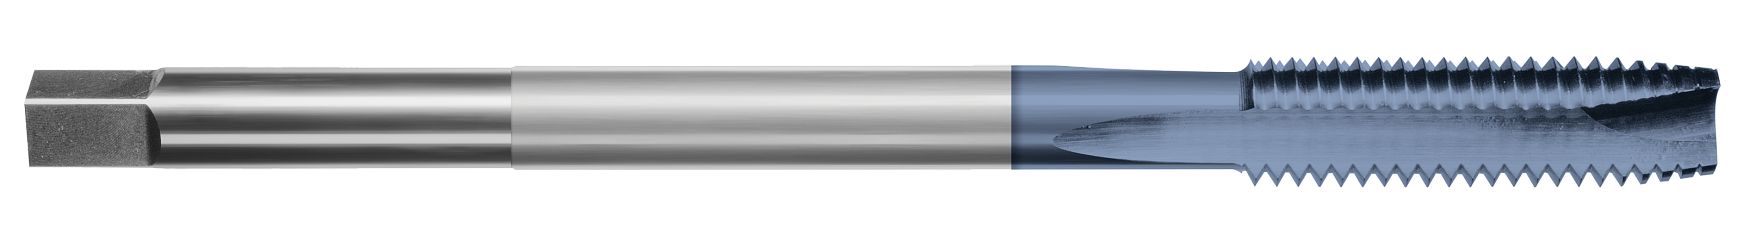 High Speed Steel-Extension Taps-Spiral Point Plug